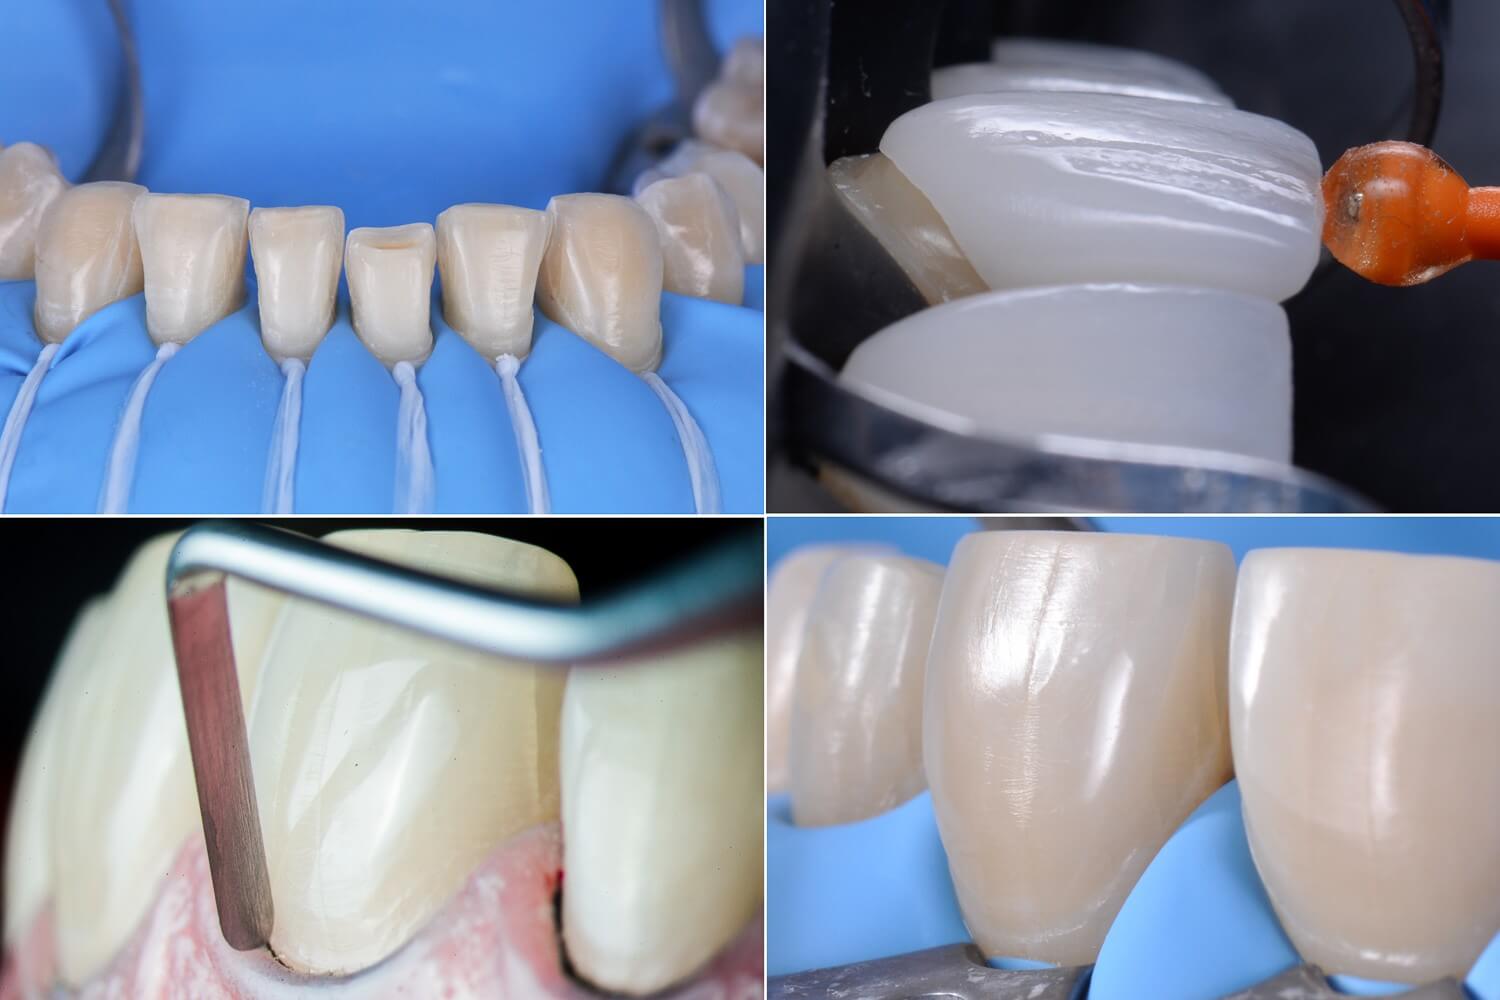 Применение люминиров в стоматологии